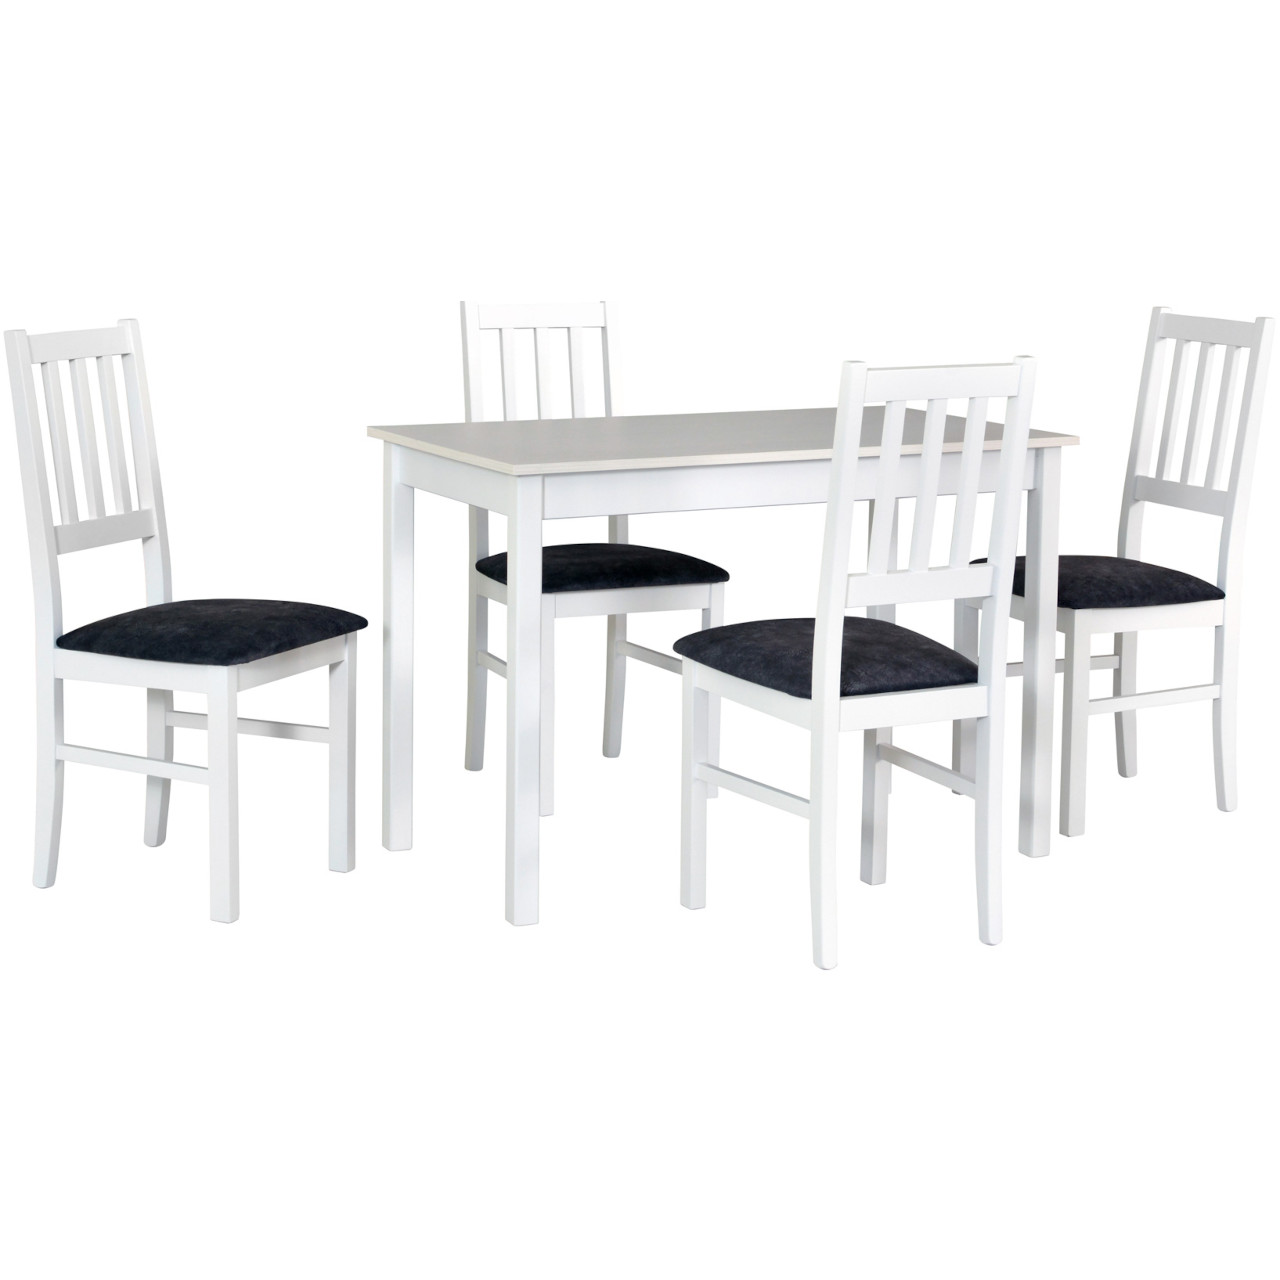 Tisch MAX 2 weiß laminat + Stühle BOS 4 (4Stk.) weiß / 24B